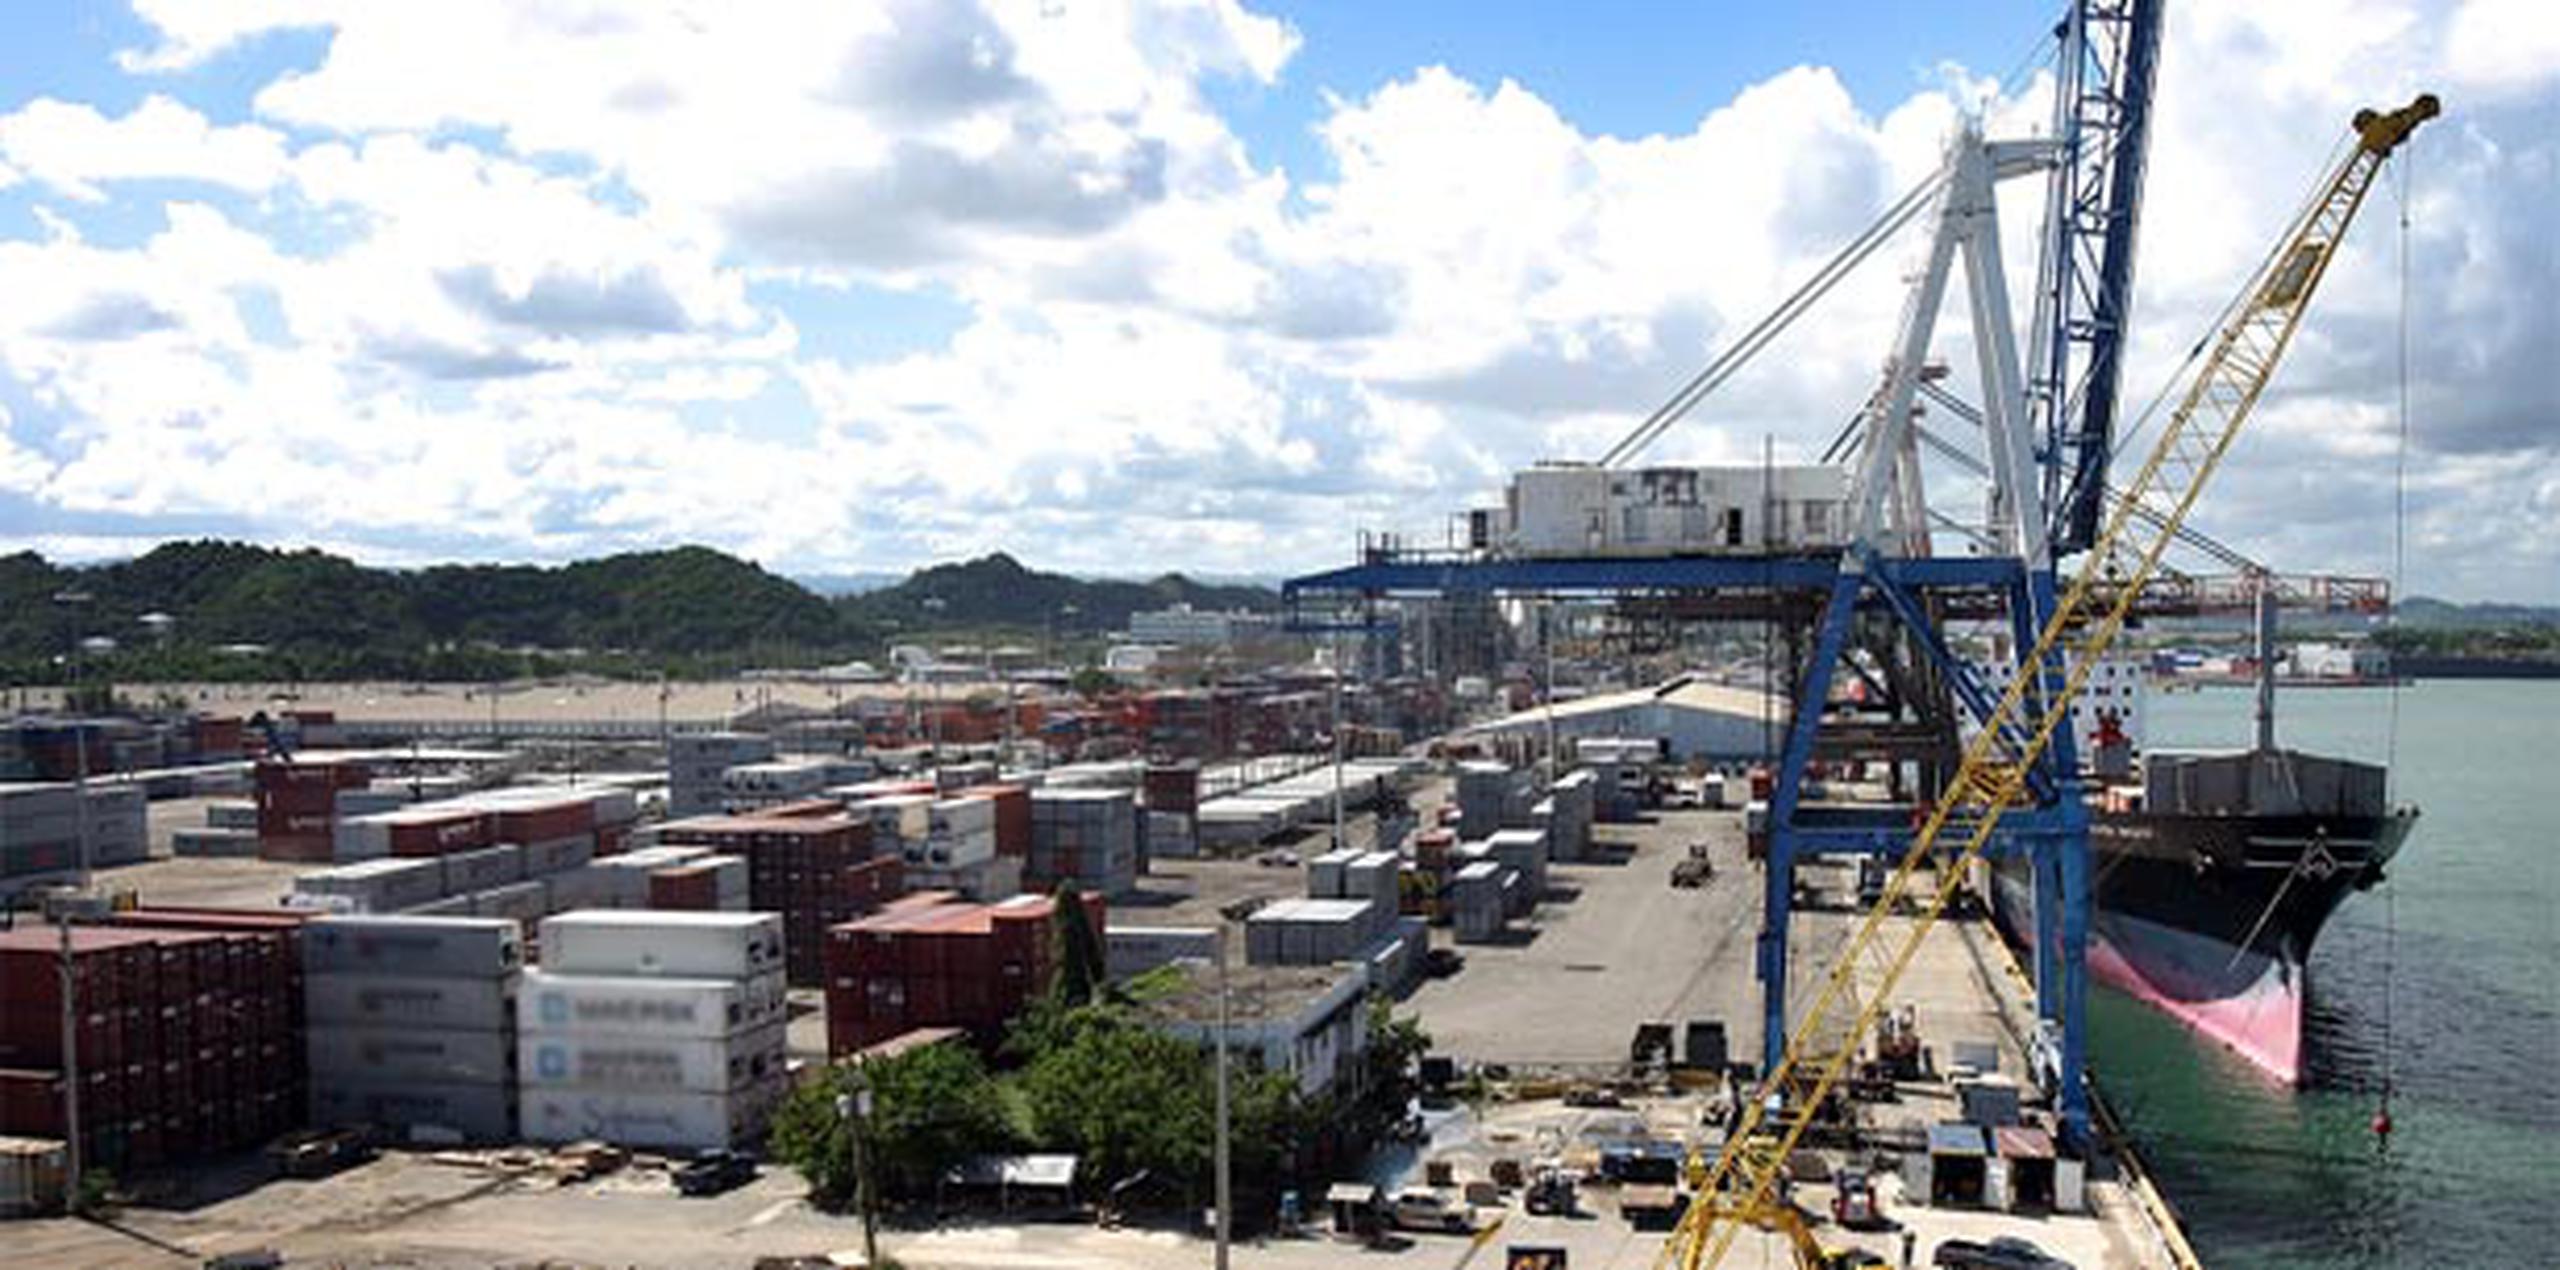 El arribo de la mercancía continúa retrasándose tras el cierre de Horizon, empresa marítima que movía el 30% de los productos que se supone entren al País. (Archivo)